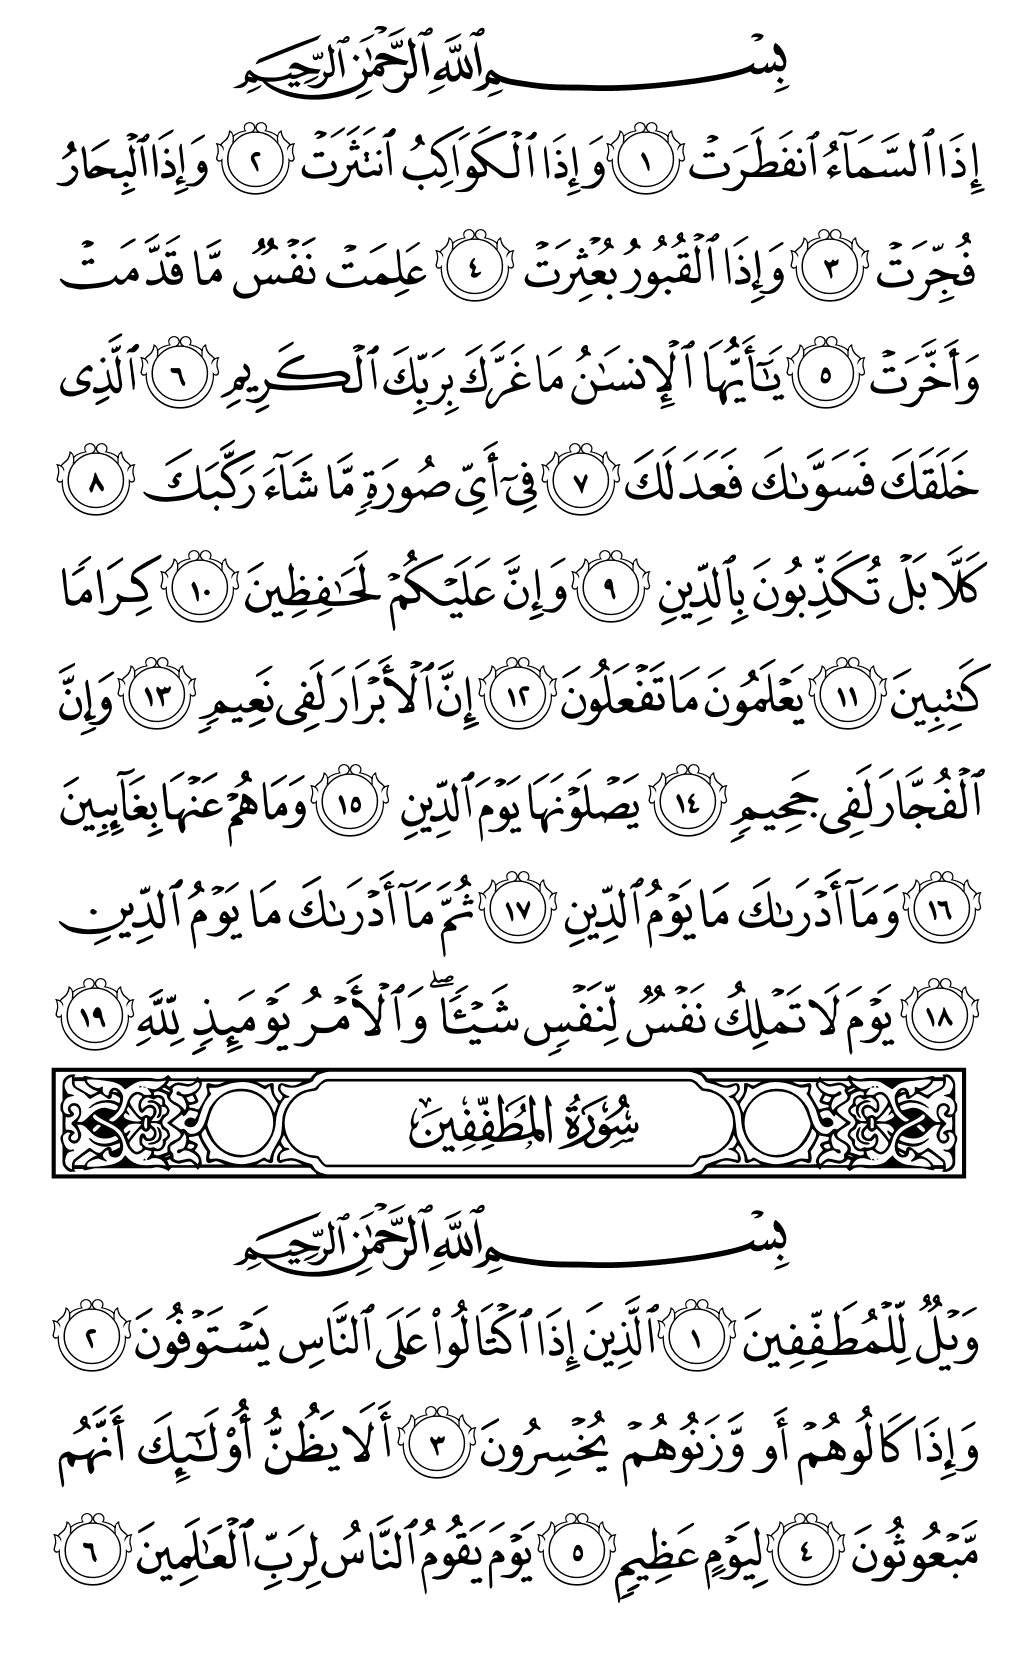 الصفحة رقم 587 من القرآن الكريم